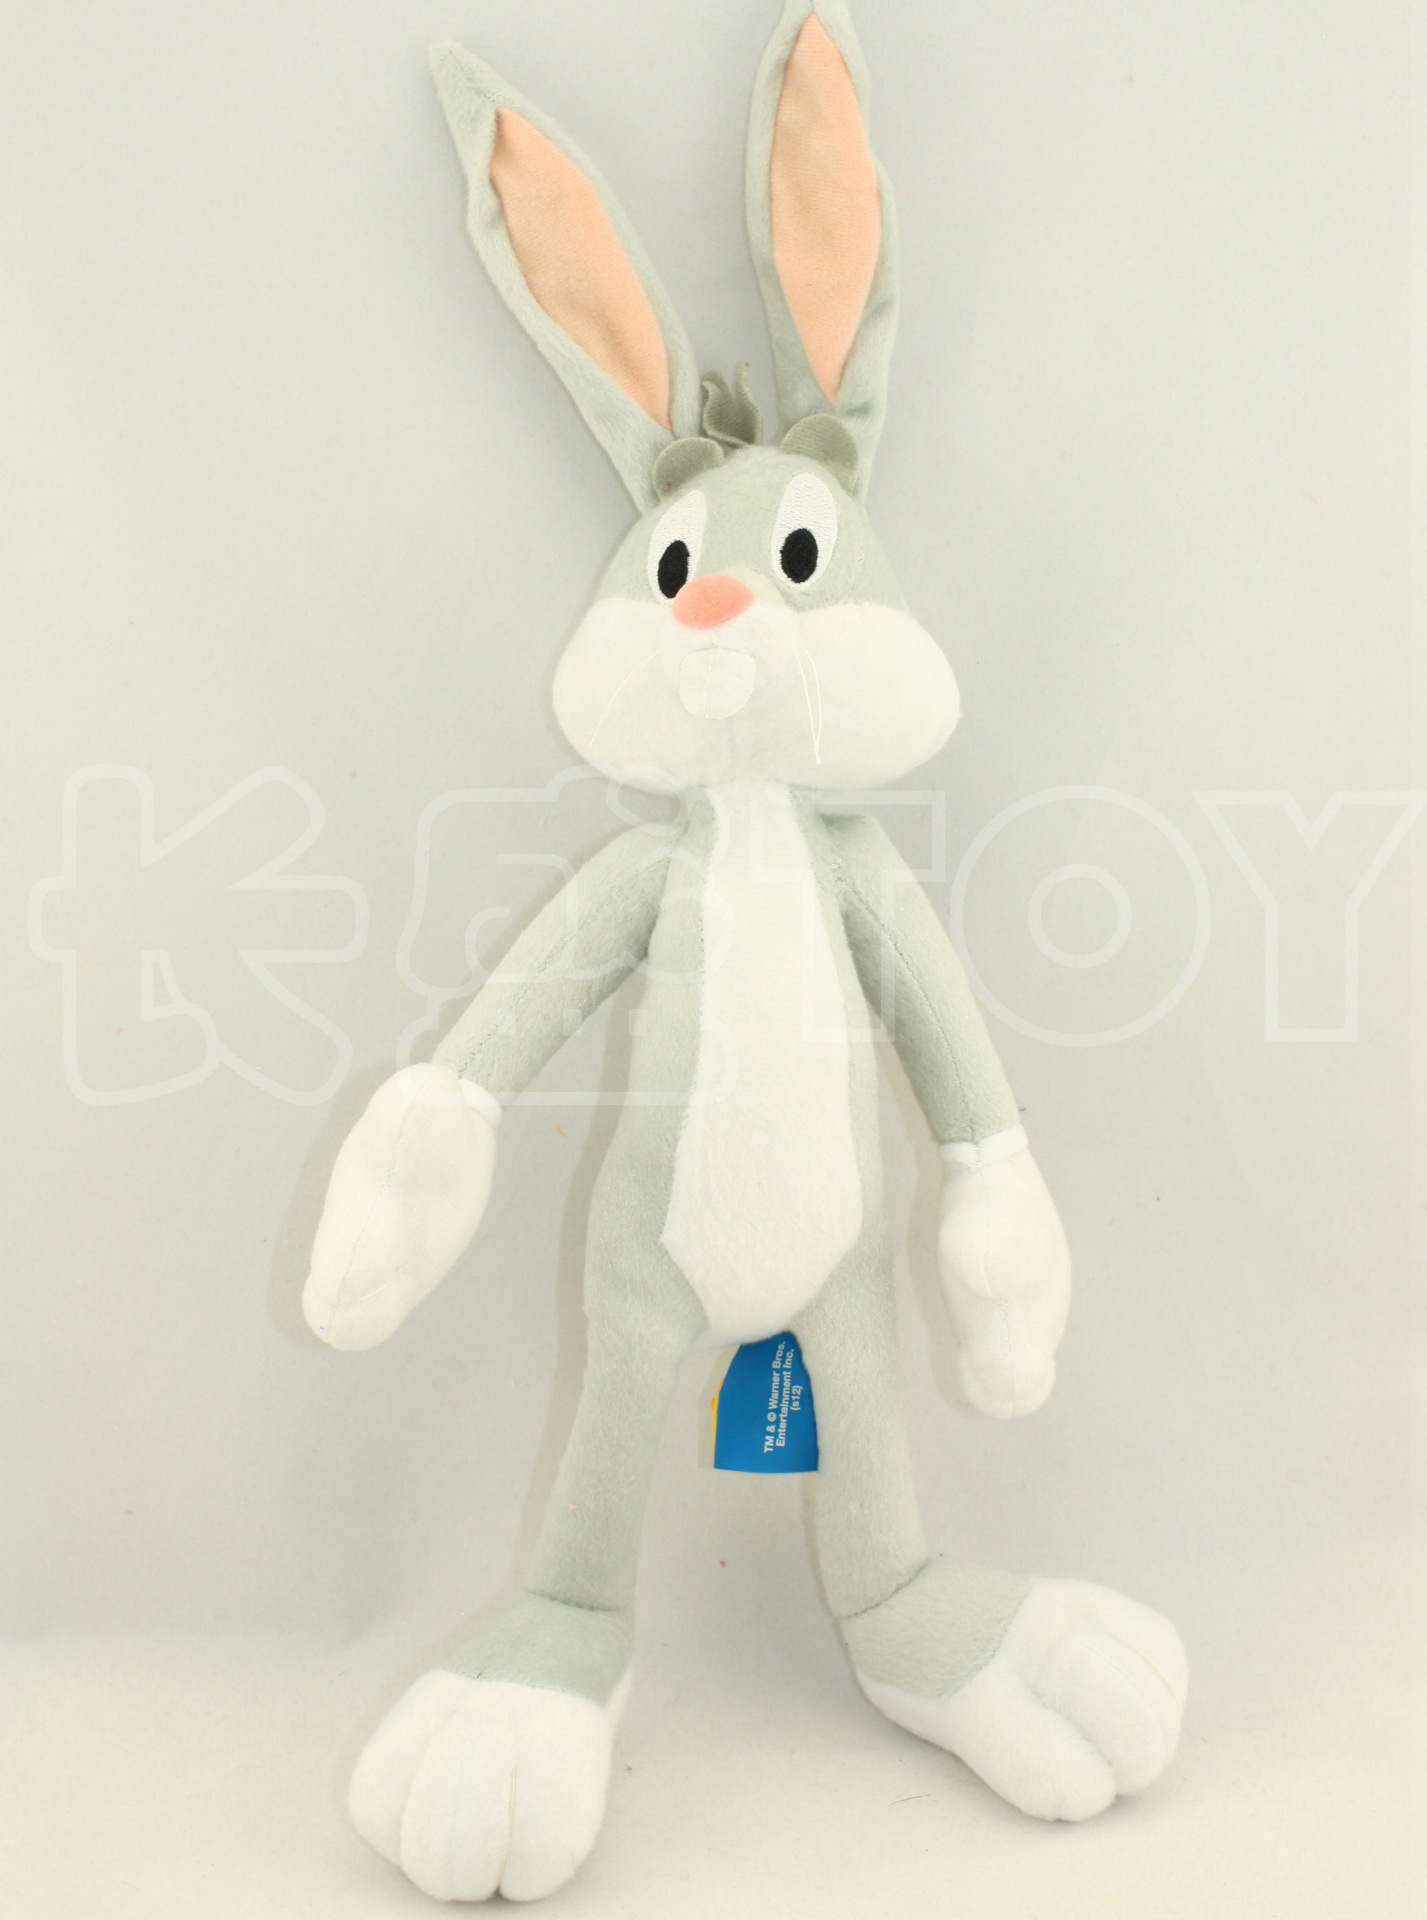 宾尼兔 bugs bunny 兔八哥 迪士尼 disney 毛绒玩具